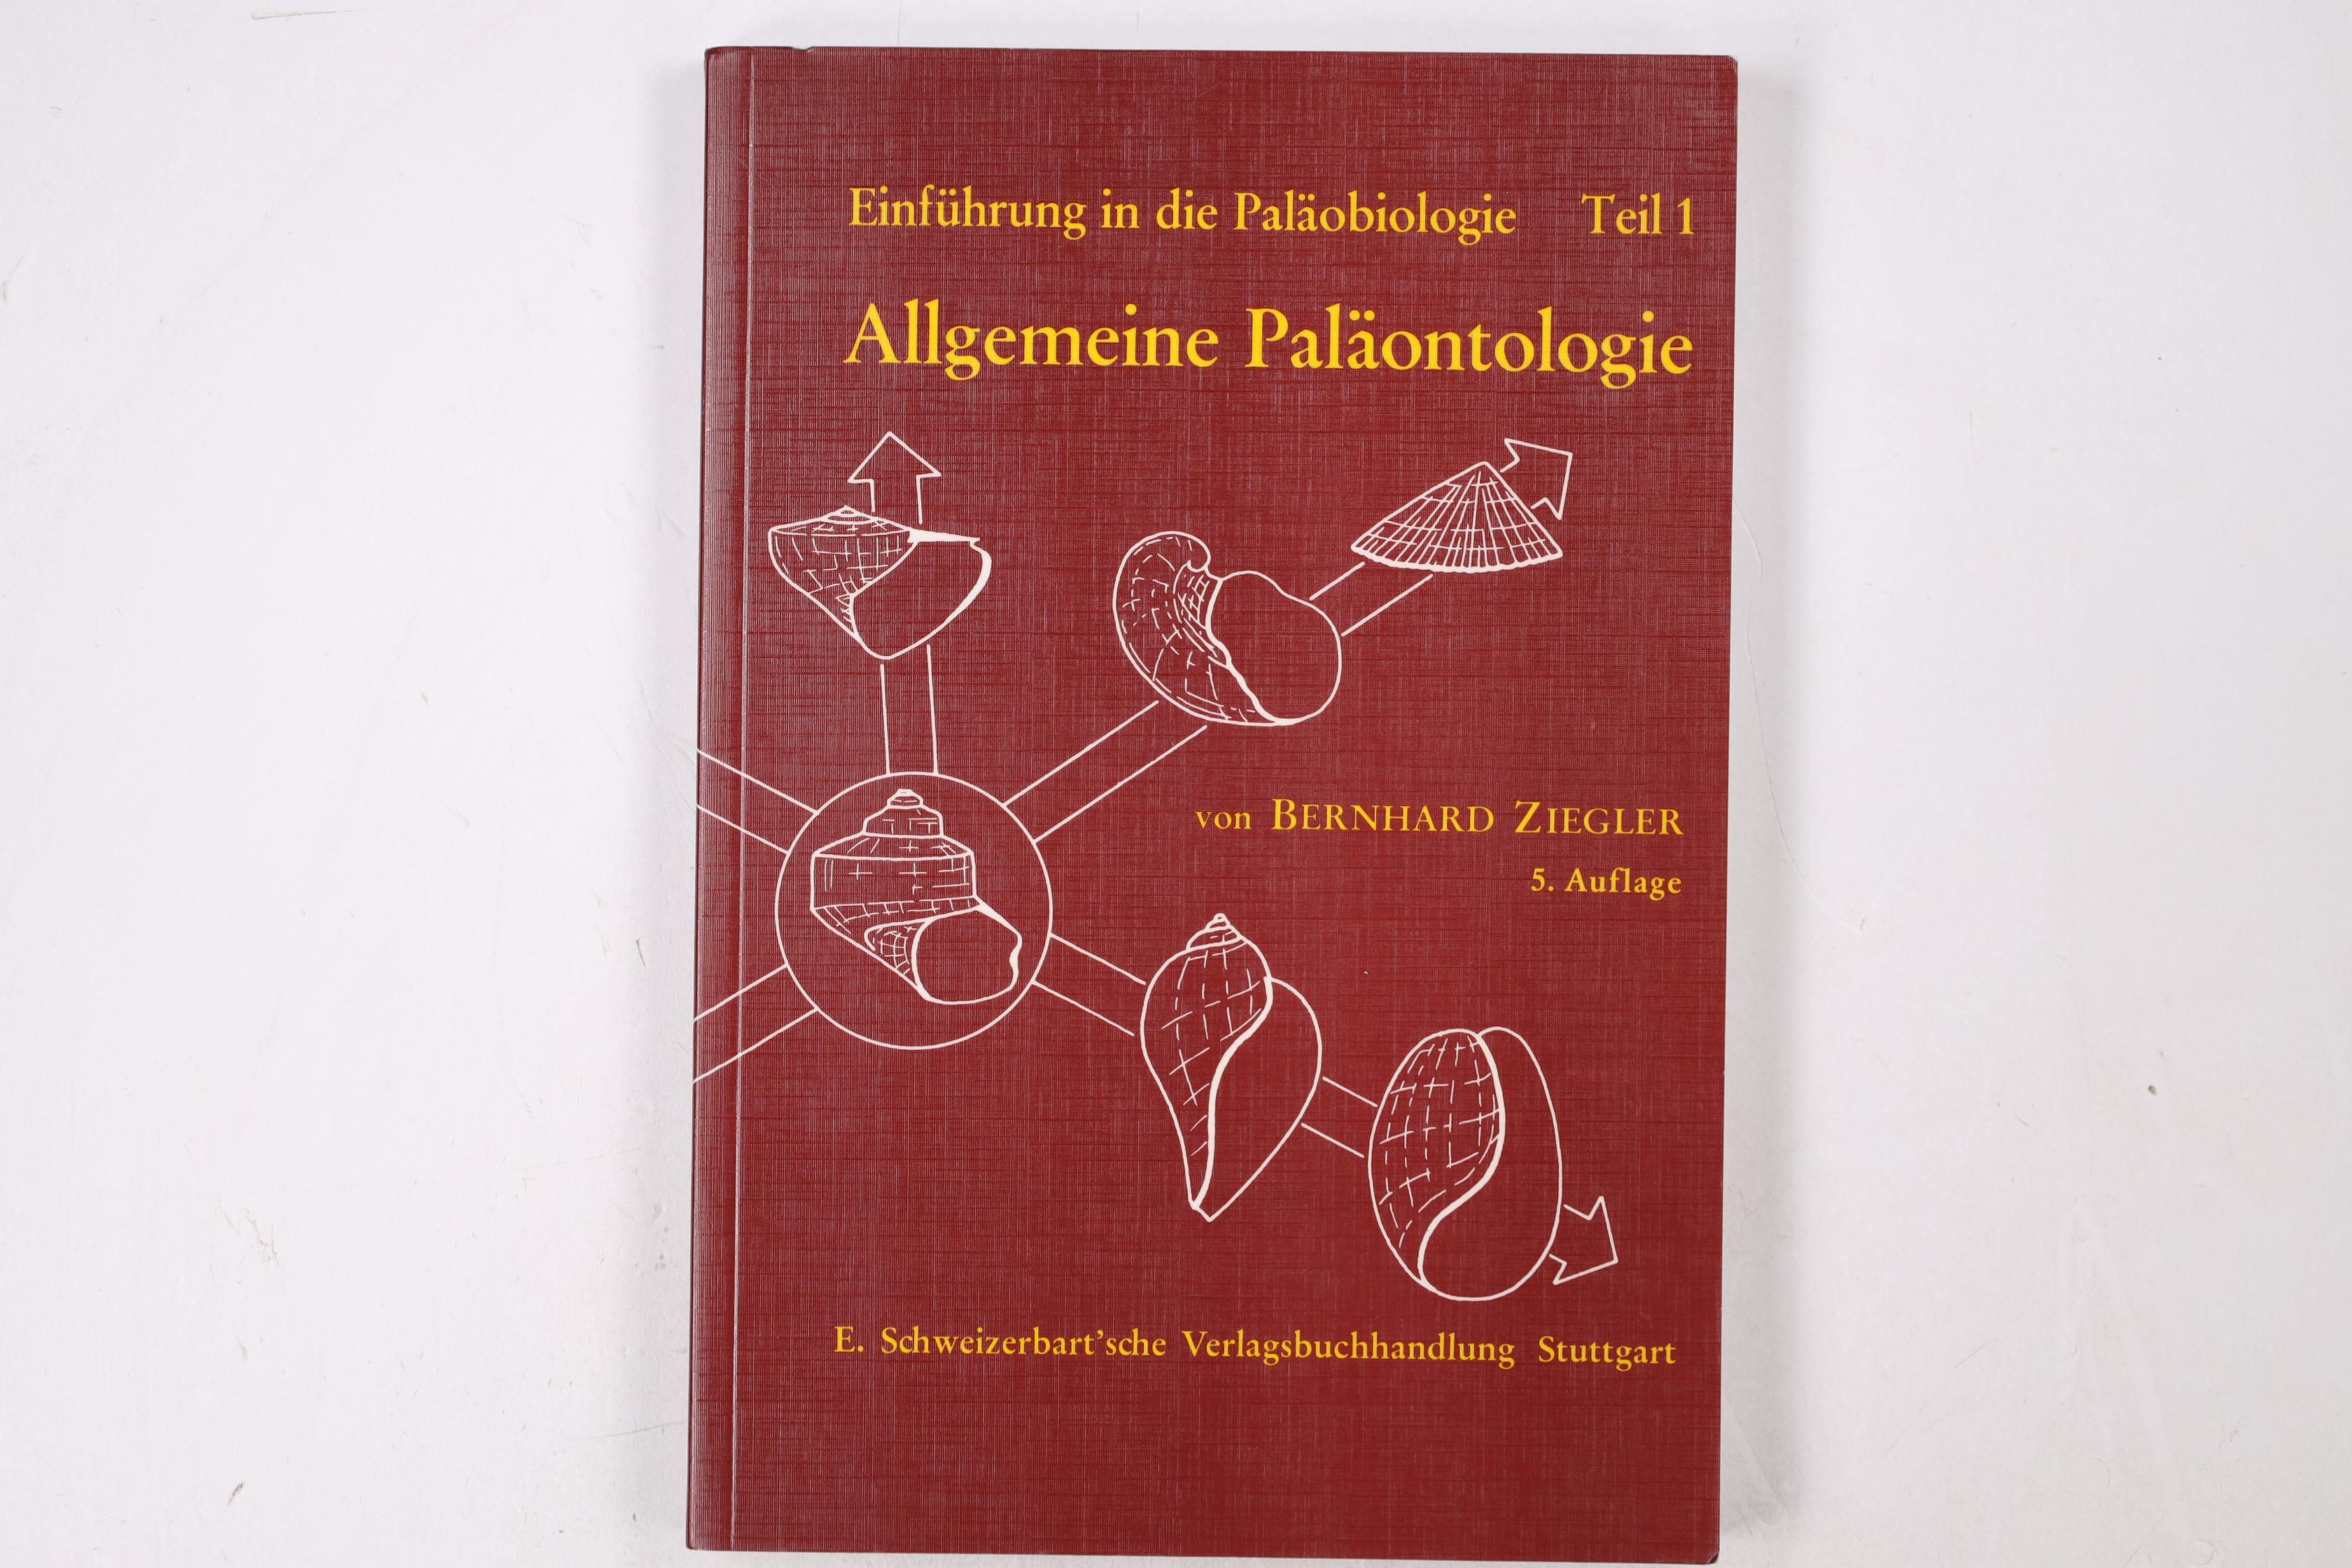 EINFÜHRUNG IN DIE PALÄOBIOLOGIE, TL.1, ALLGEMEINE PALÄONTOLOGIE. - Ziegler, Bernhard